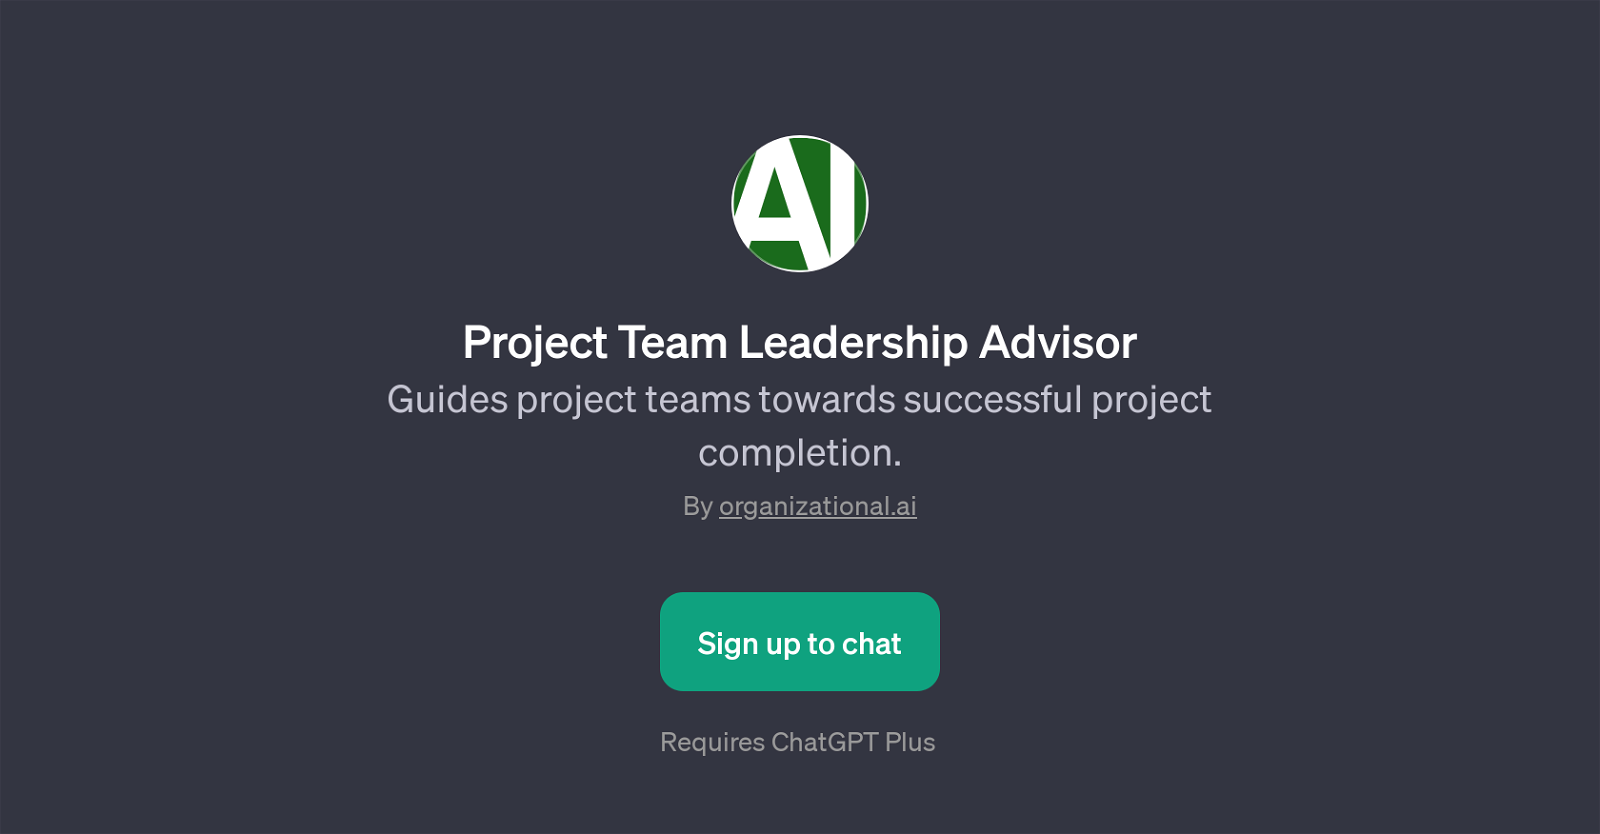 Project Team Leadership Advisor website